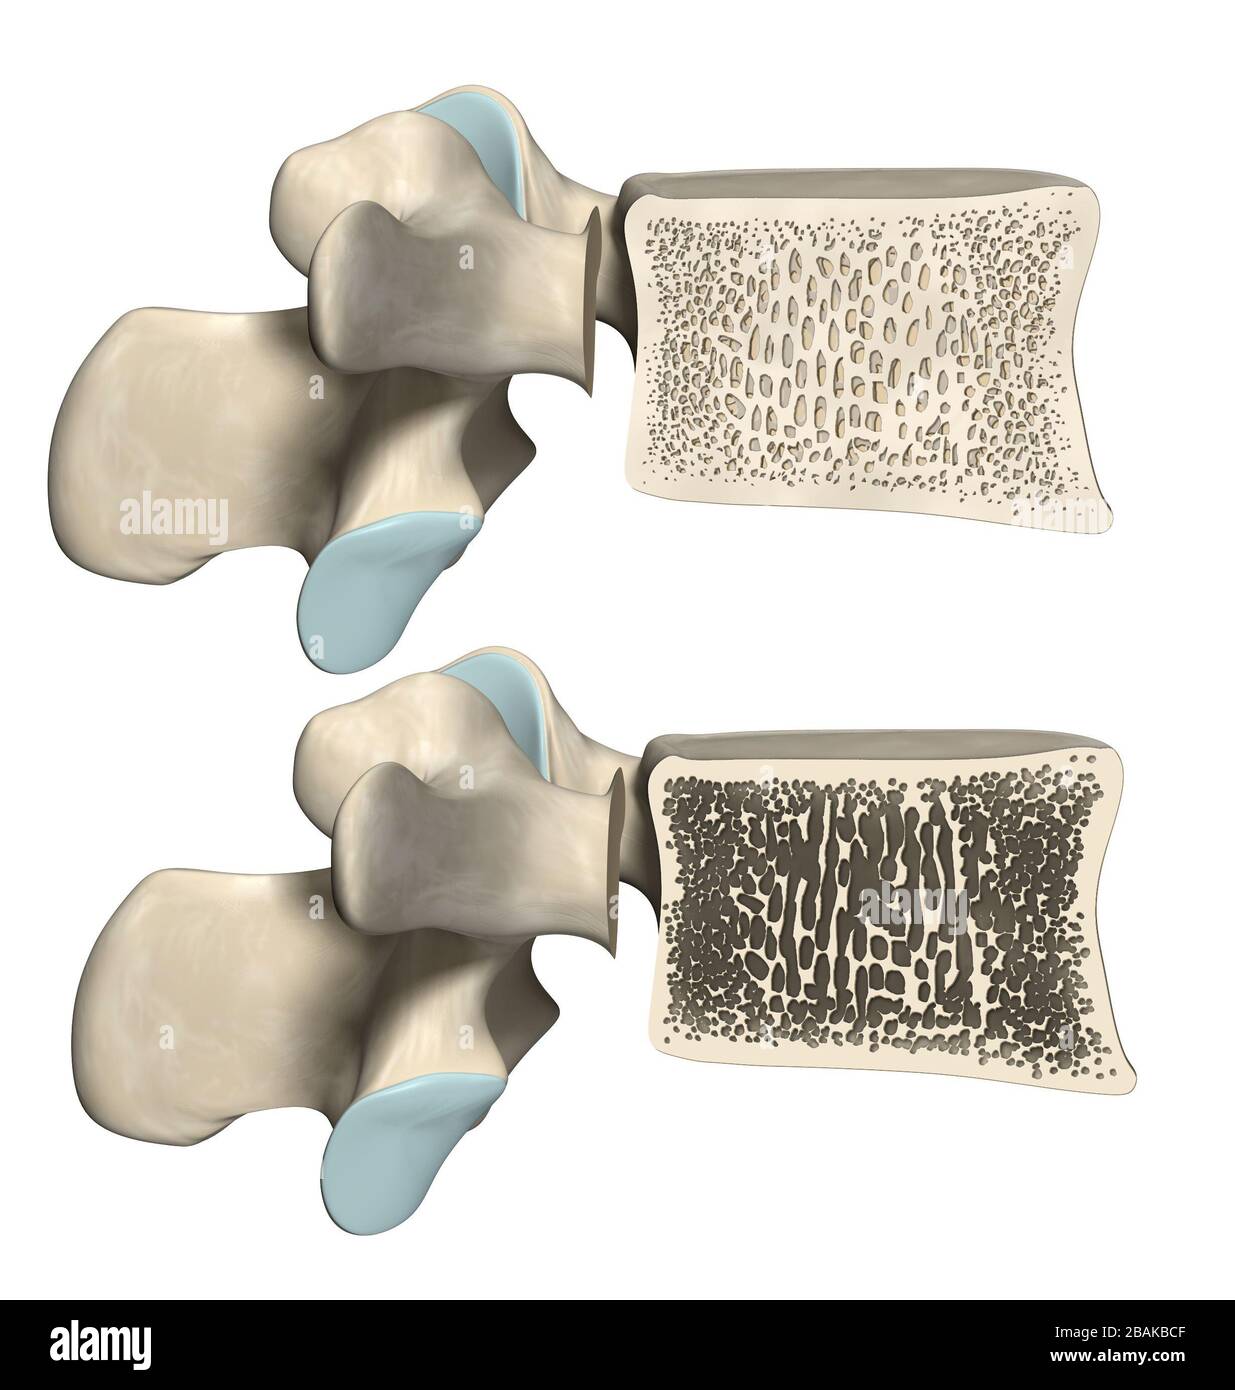 Oben: Gesunder Wirbelkörper und normale Knochenmatrix unten: Wirbelkörper mit Osteoporose, 3D-Abbildung Stockfoto